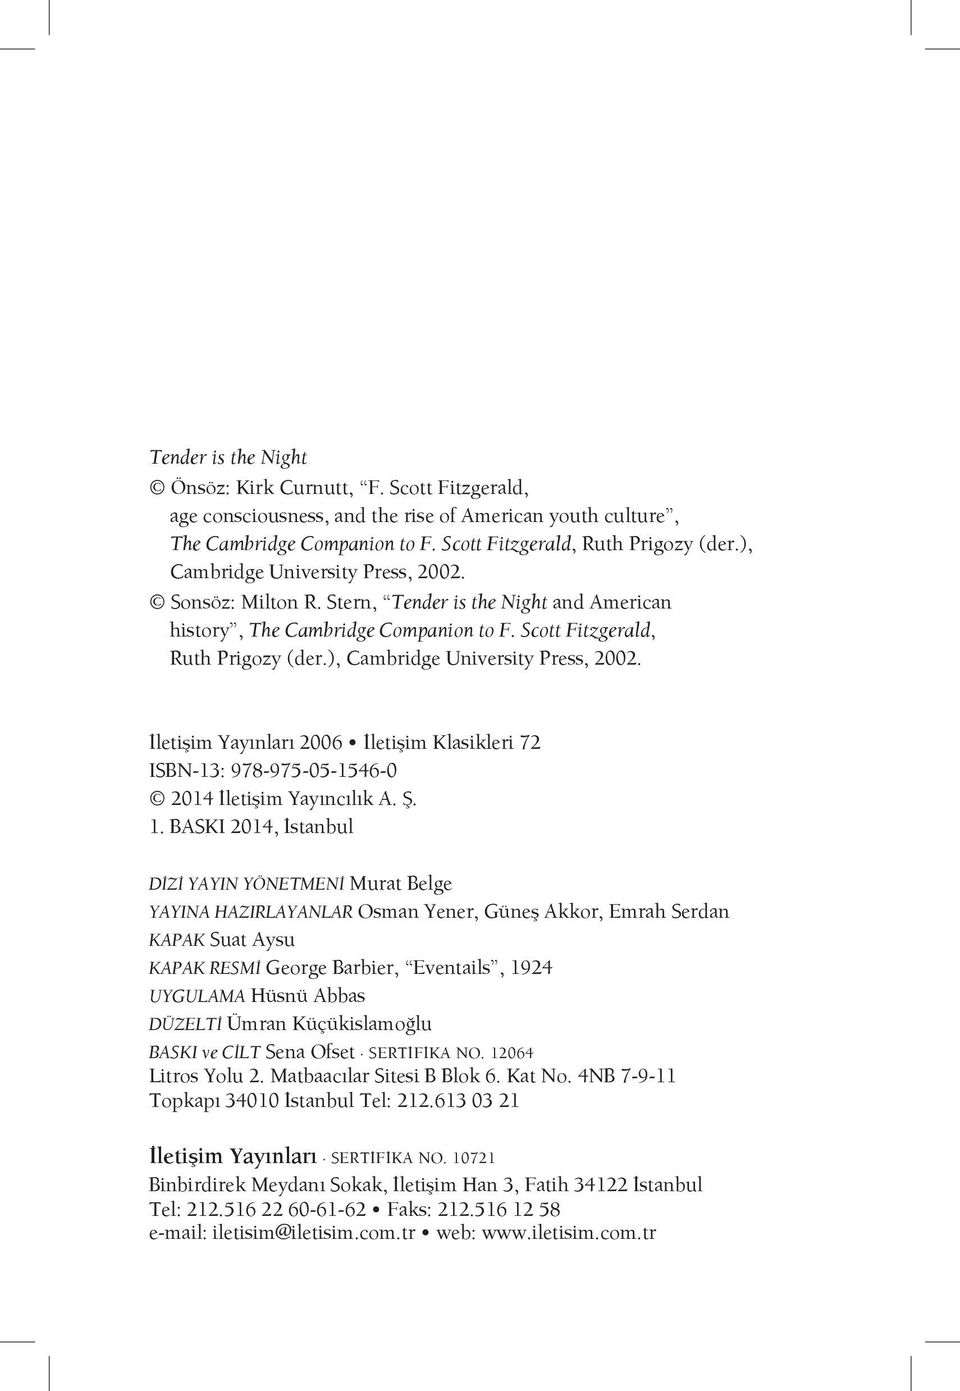 ), Cambridge University Press, 2002. İletişim Yayınları 2006 İletişim Klasikleri 72 ISBN-13: 978-975-05-1546-0 2014 İletişim Yayıncılık A. Ş. 1.